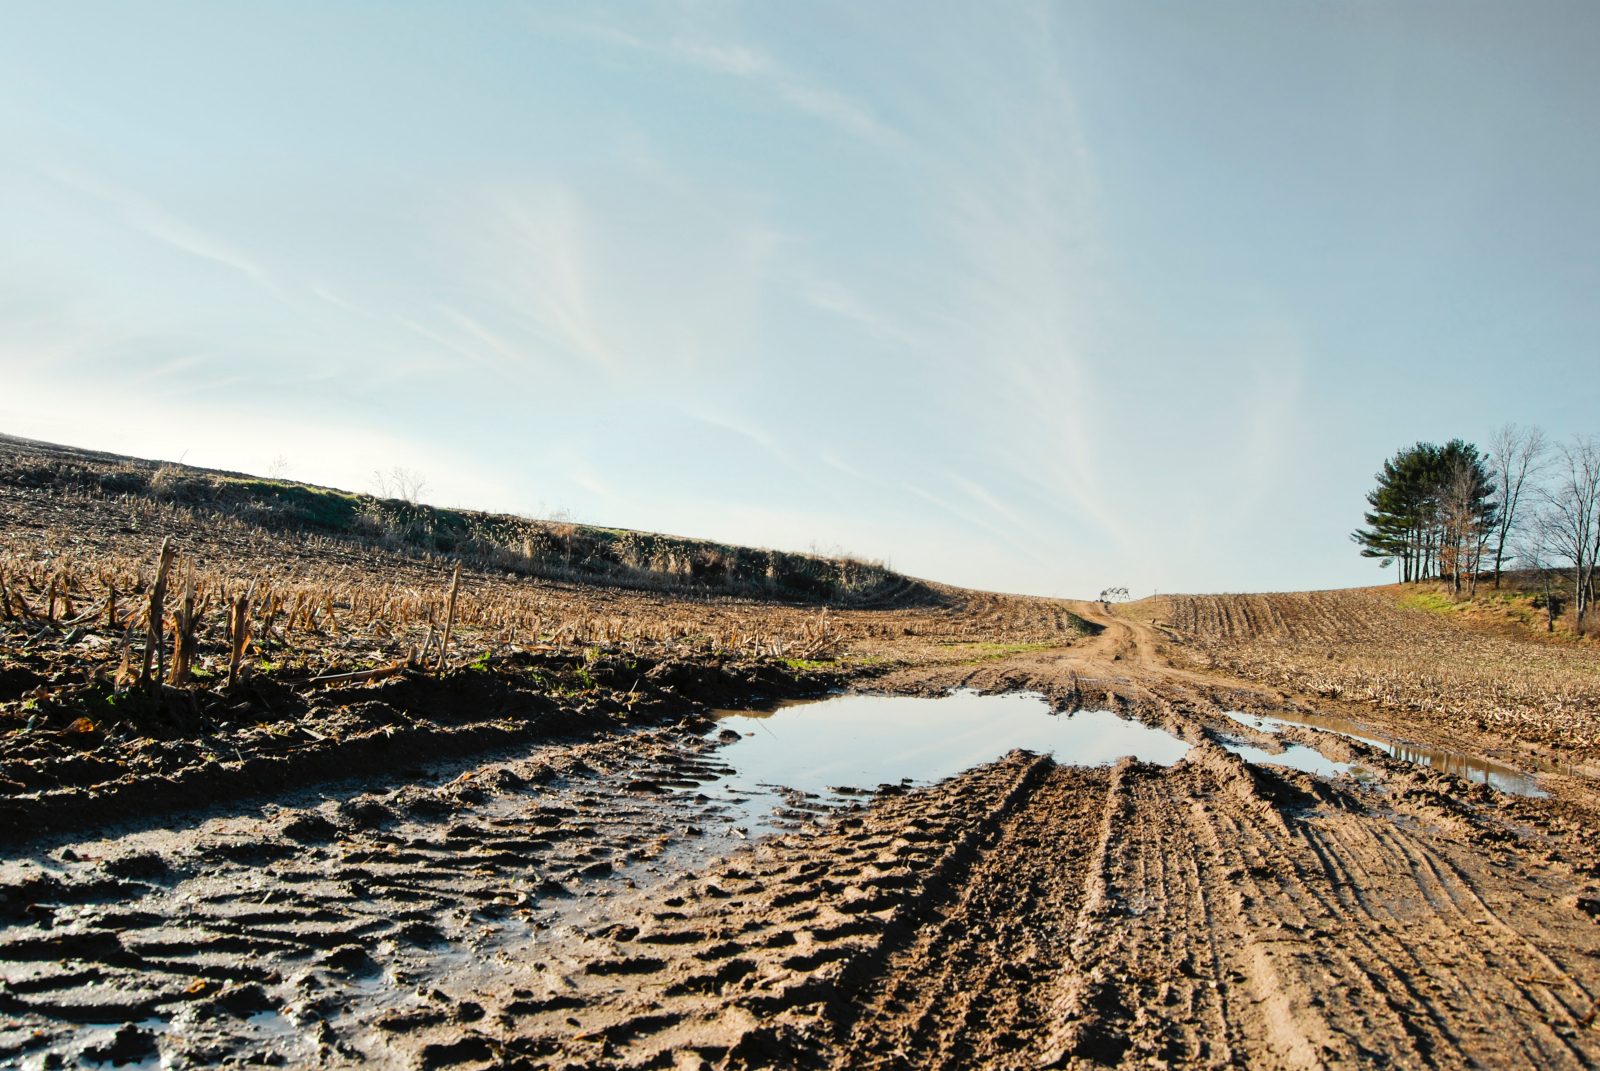 Elskede afskaffe Forbindelse Midwest soil is eroding faster and modern farming could be culprit. | Grist